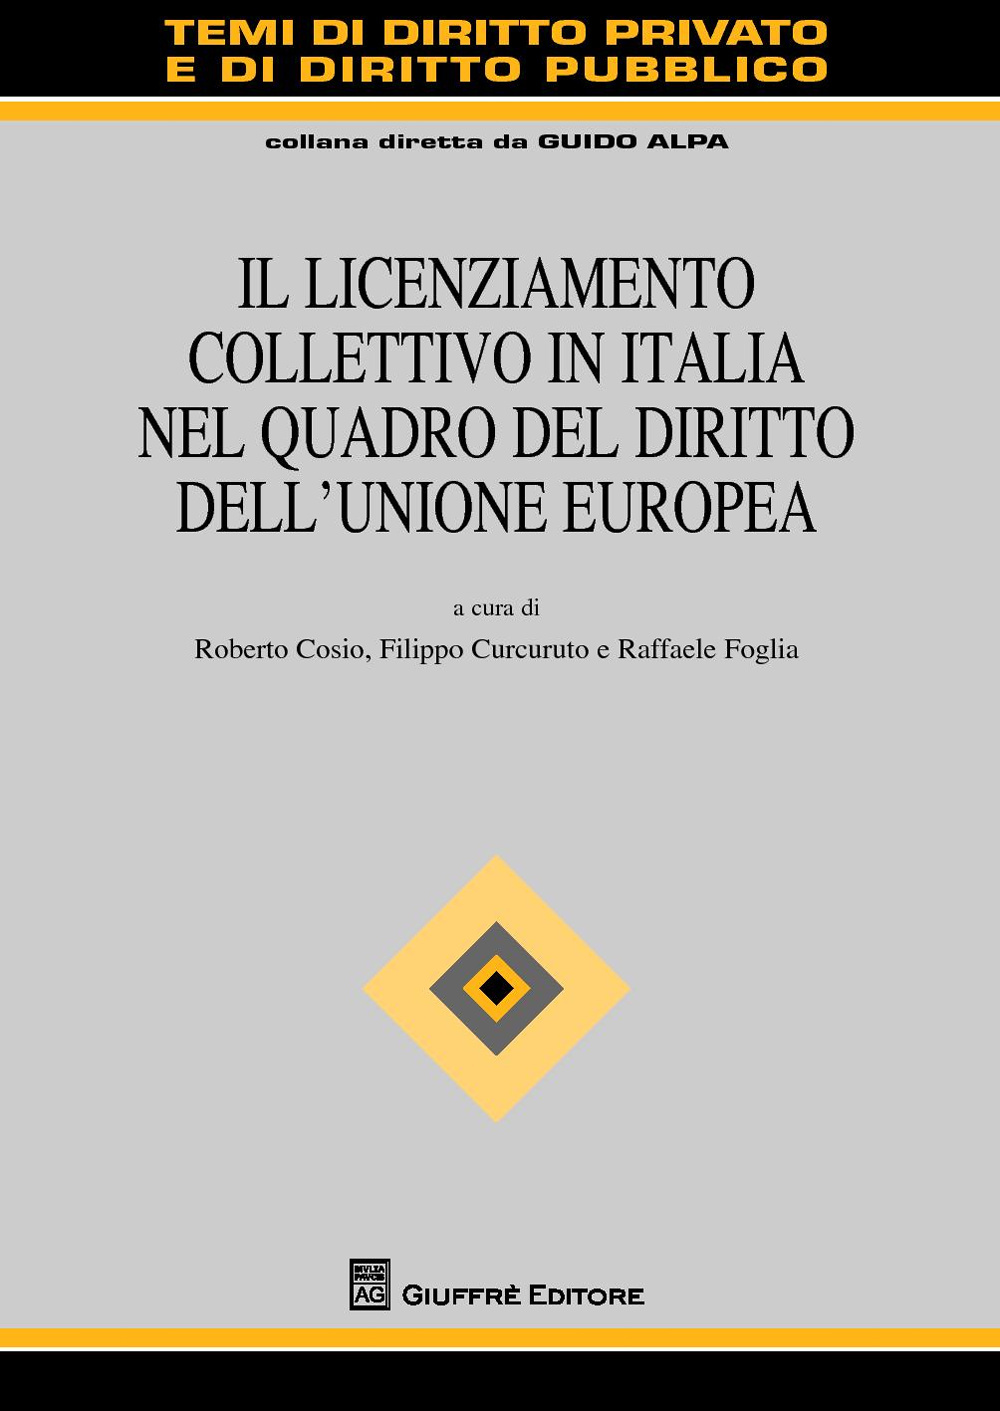 Il licenziamento collettivo in Italia nel quadro del diritto dell'Unione Europea